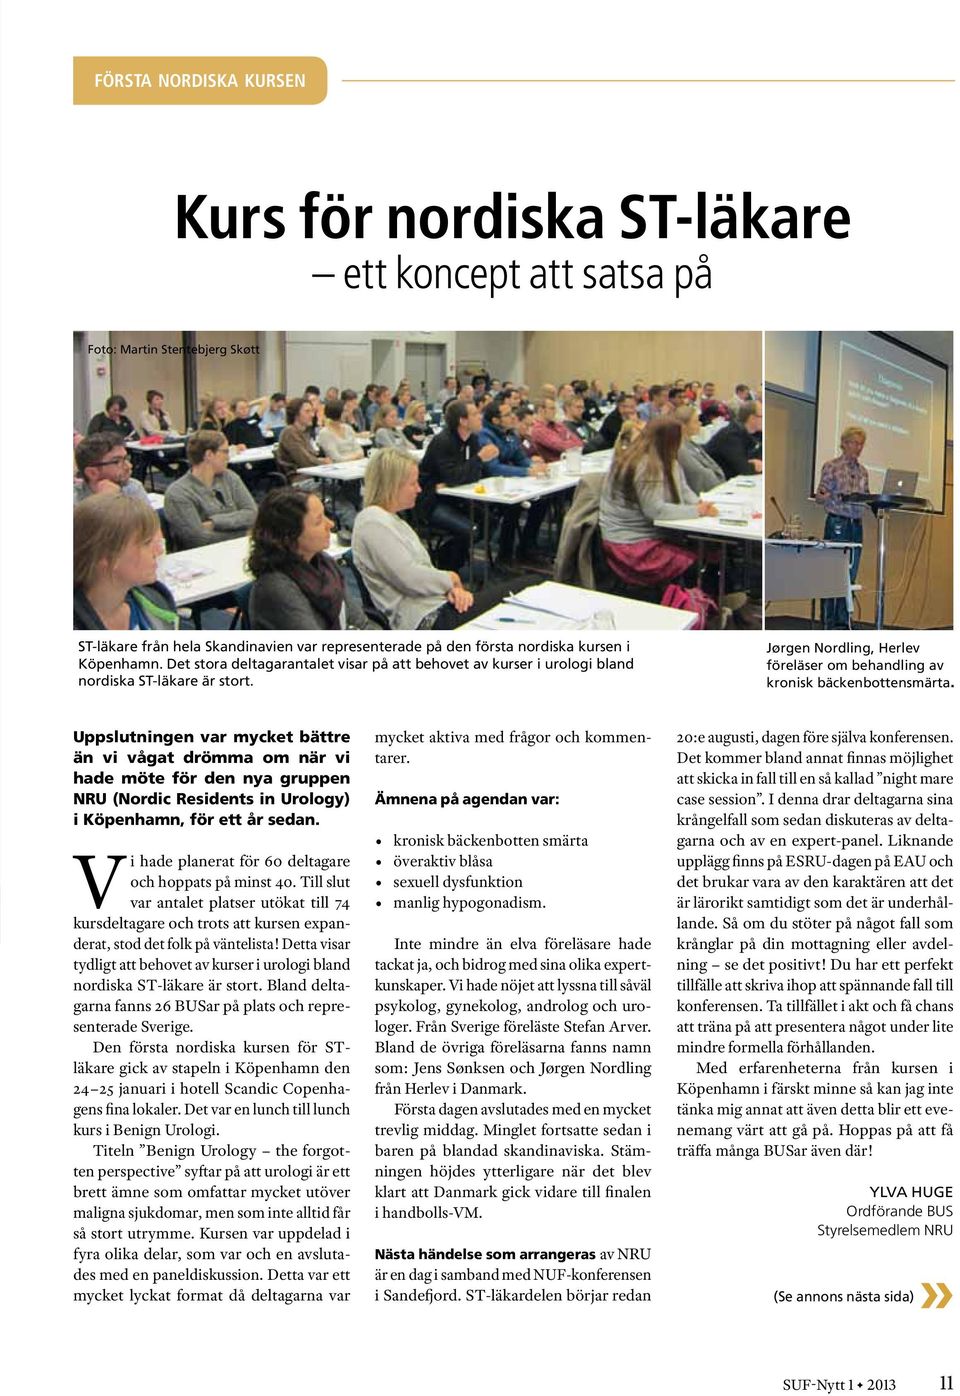 Uppslutningen var mycket bättre än vi vågat drömma om när vi hade möte för den nya gruppen NRU (Nordic Residents in Urology) i Köpenhamn, för ett år sedan.